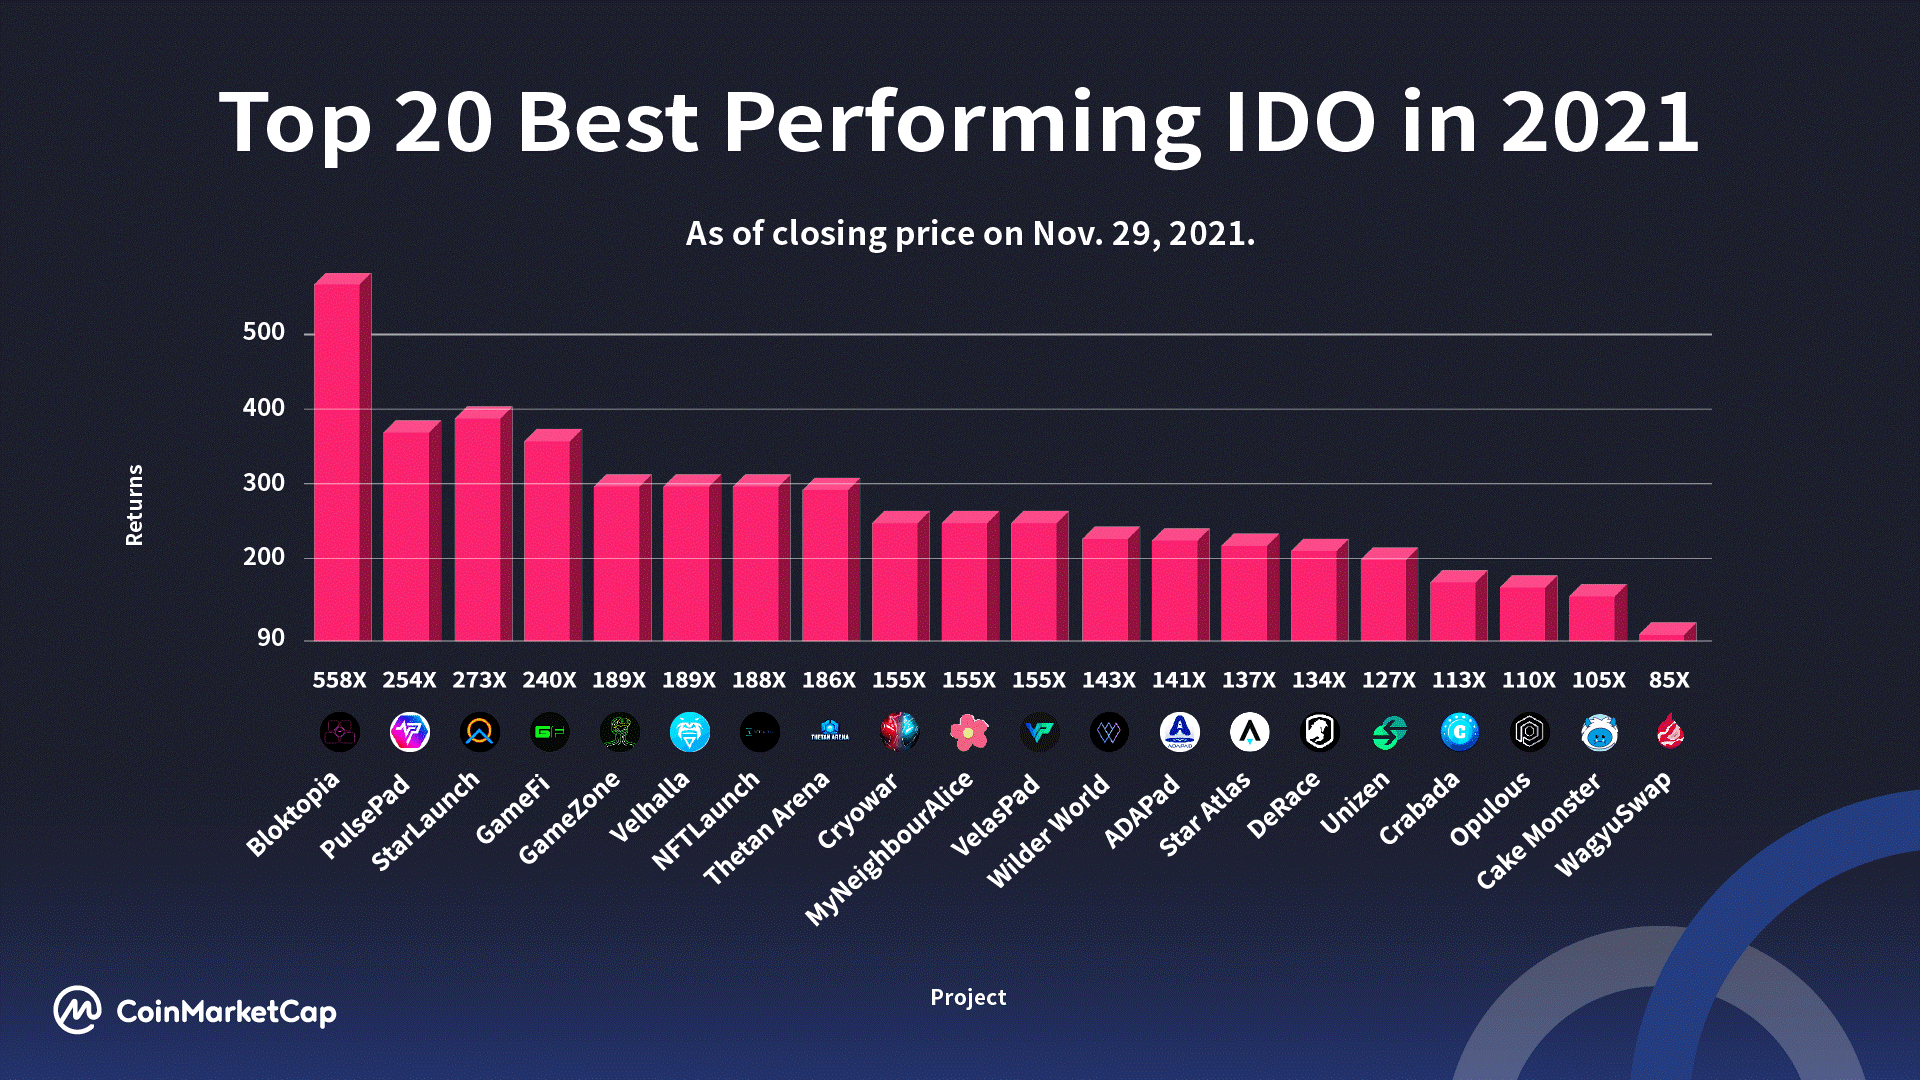 ViMoney: IDO tốt nhất 2021: Metaverse, Launchpads, Game blockchain, NFT và DeFi - Top 20 IDO tốt nhất